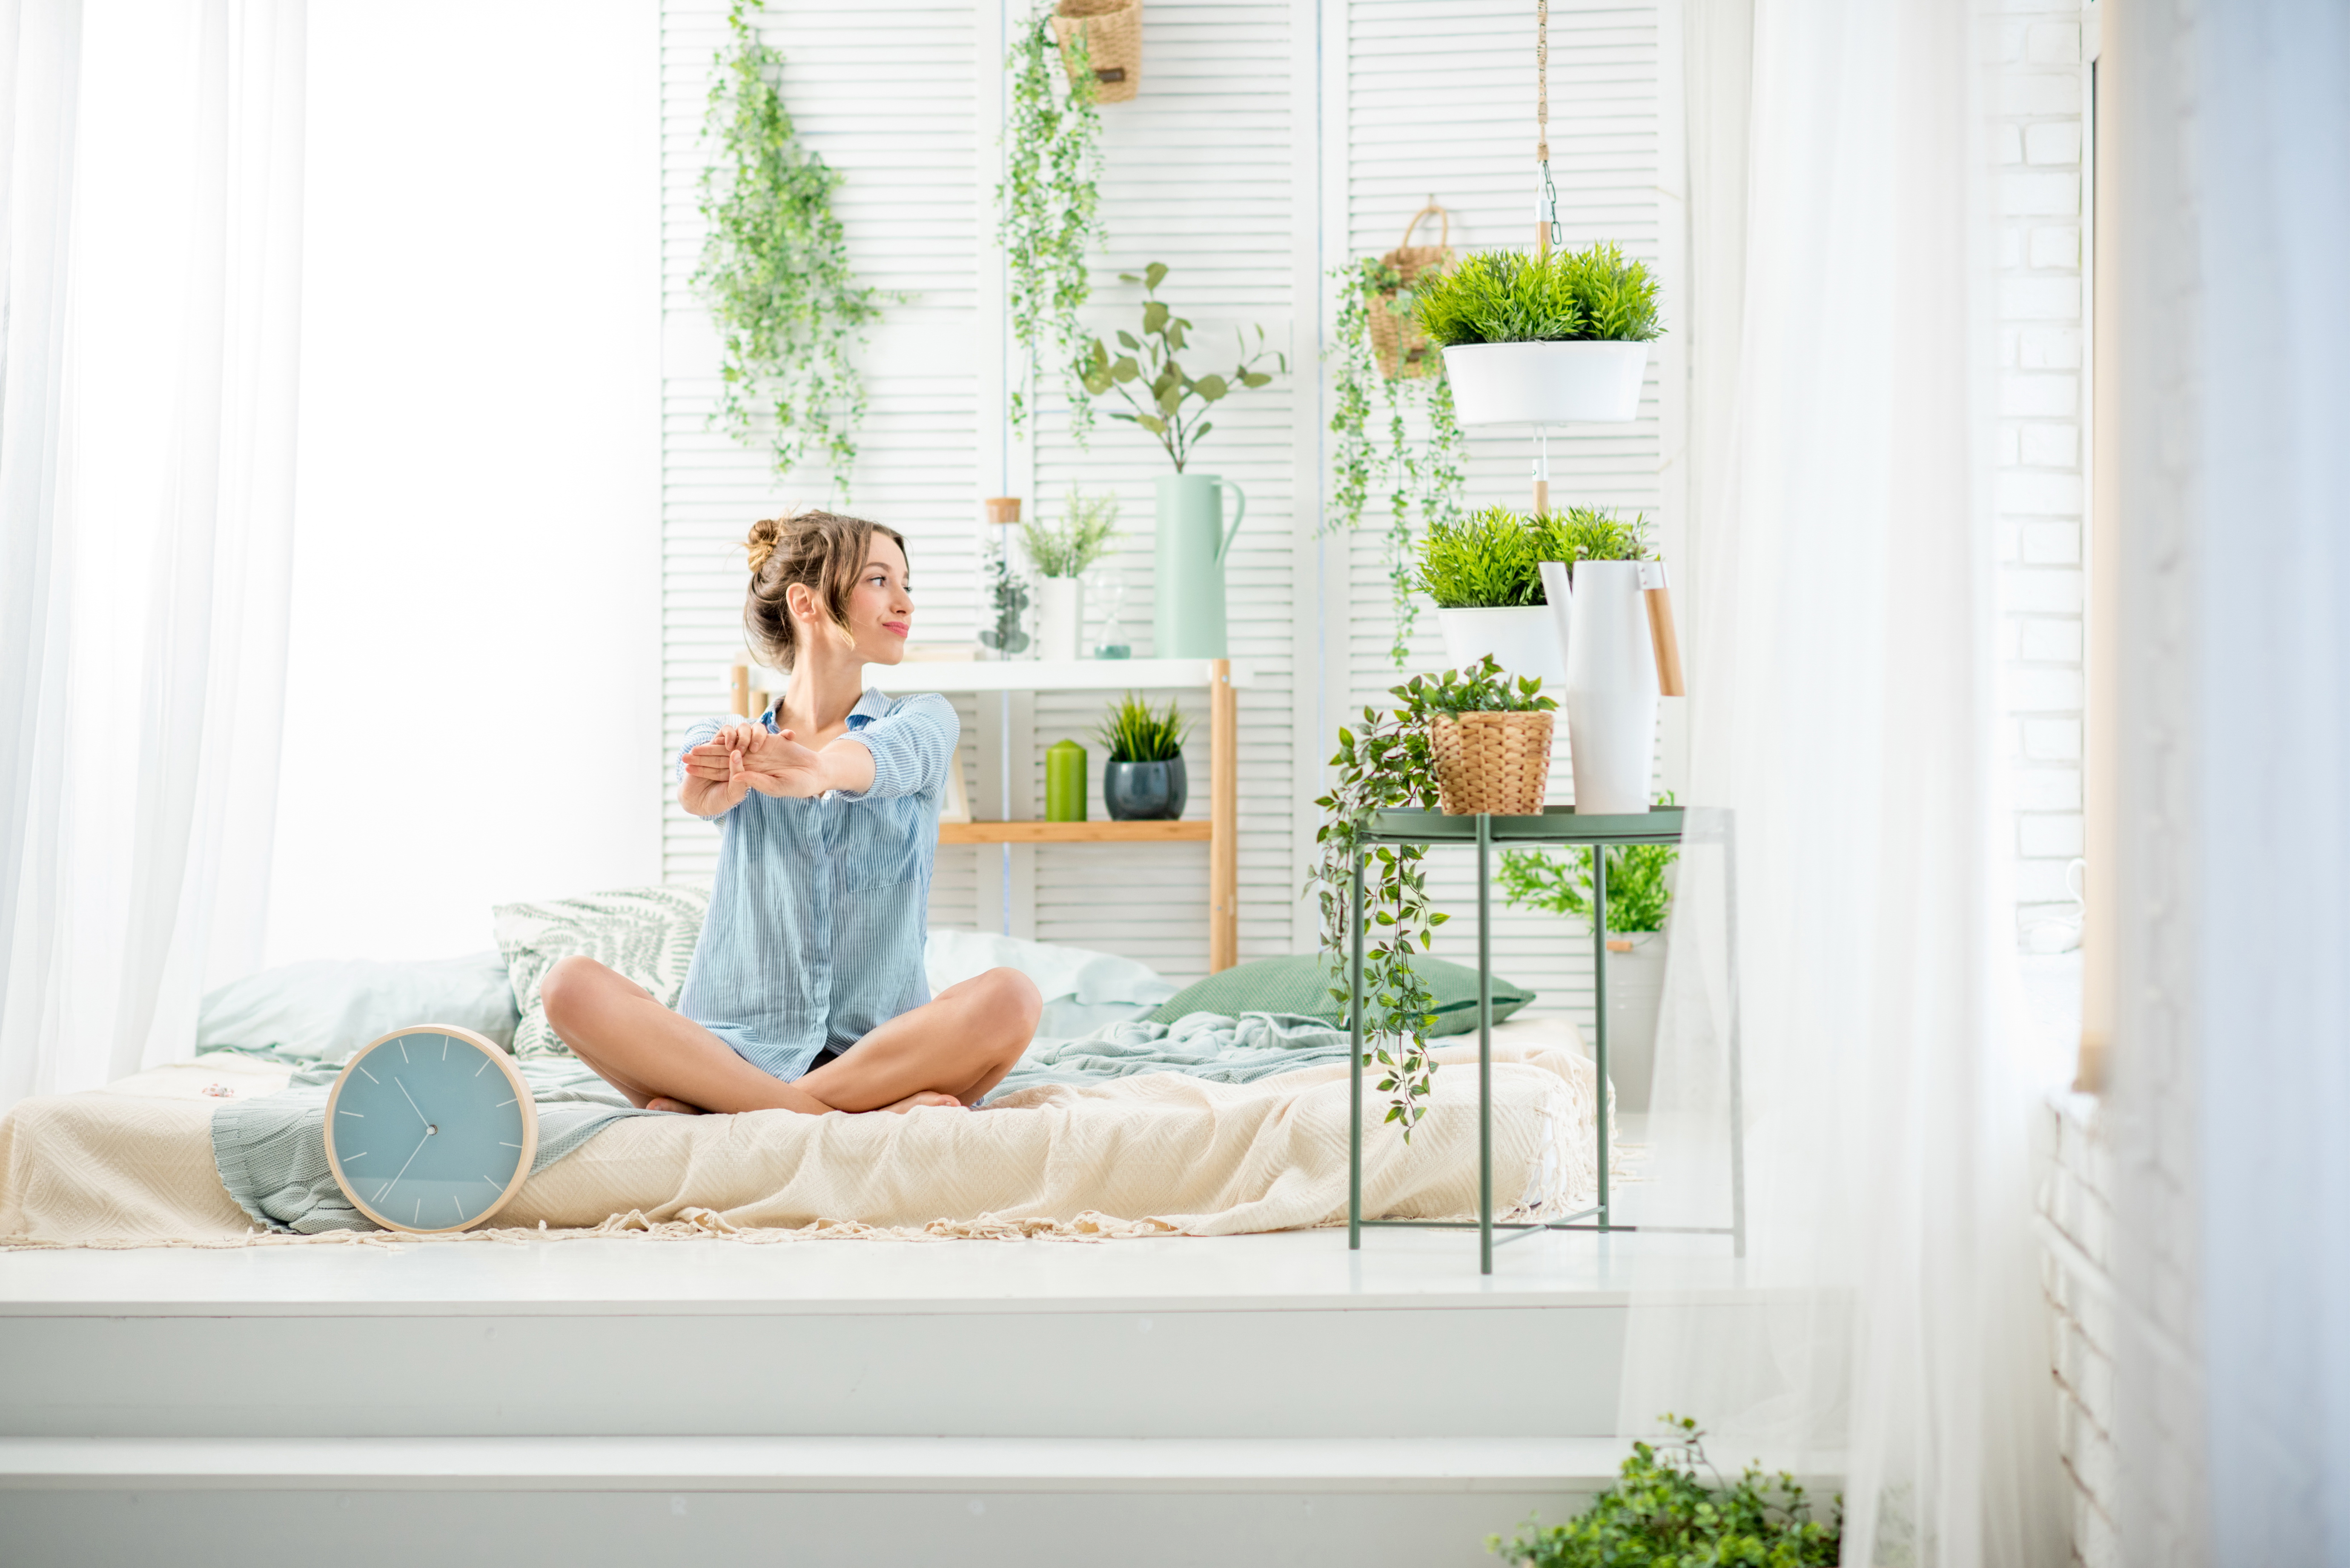 Tisztítsuk meg növényekkel a hálószoba levegőjét - Blikk